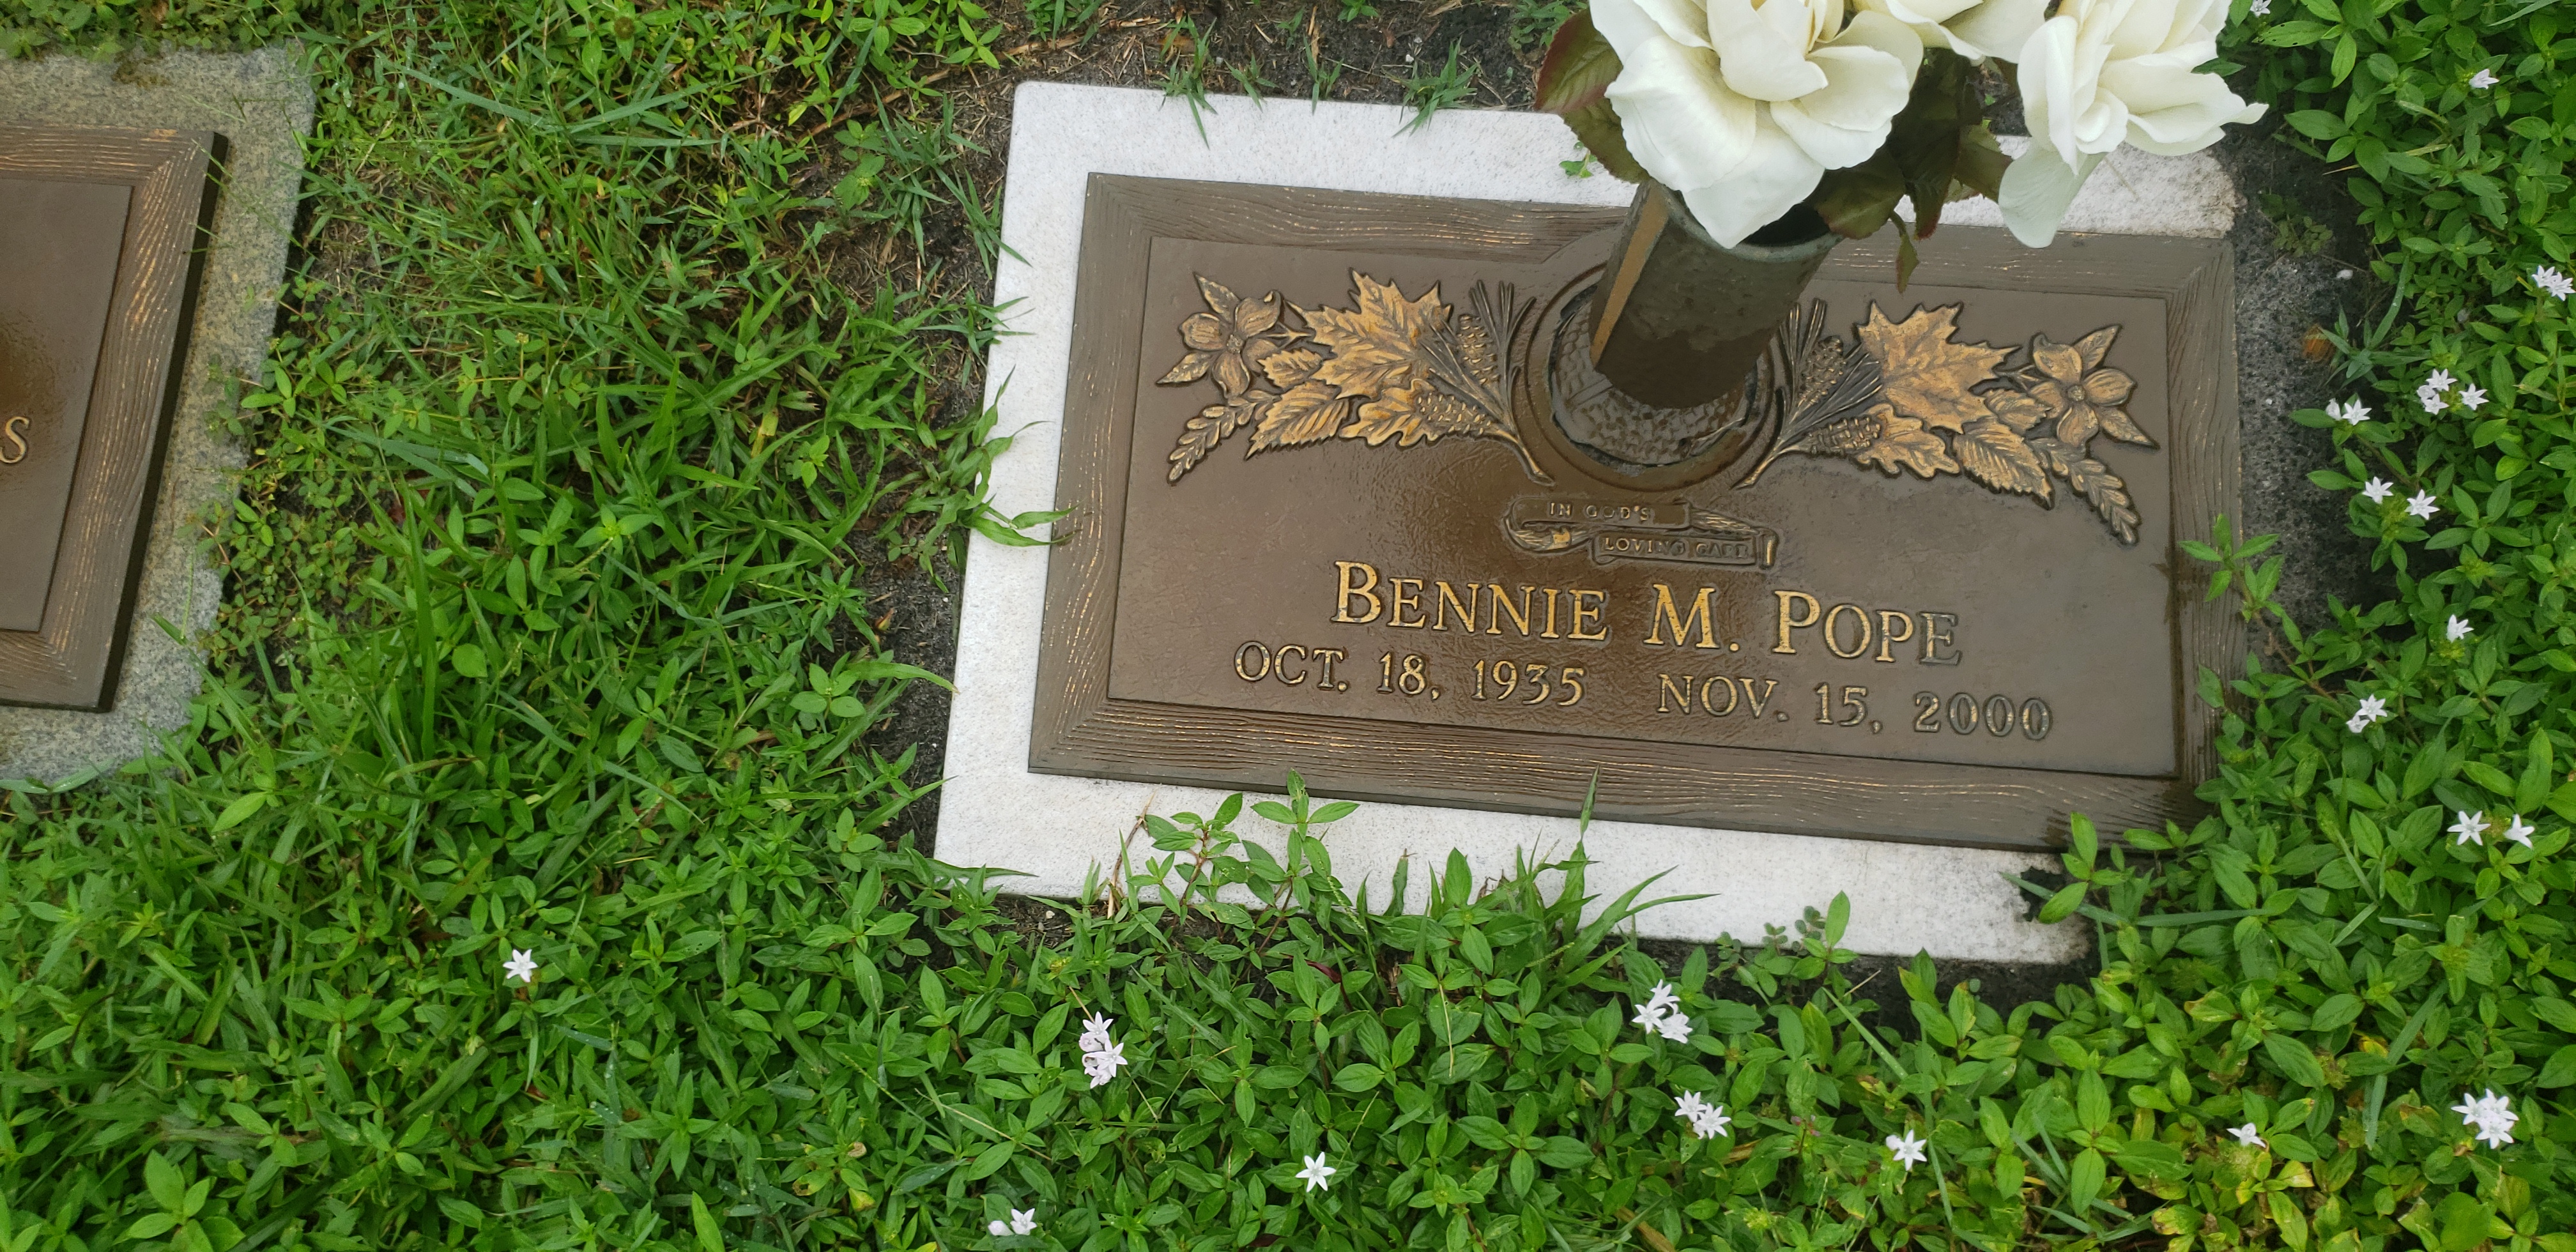 Bennie M Pope